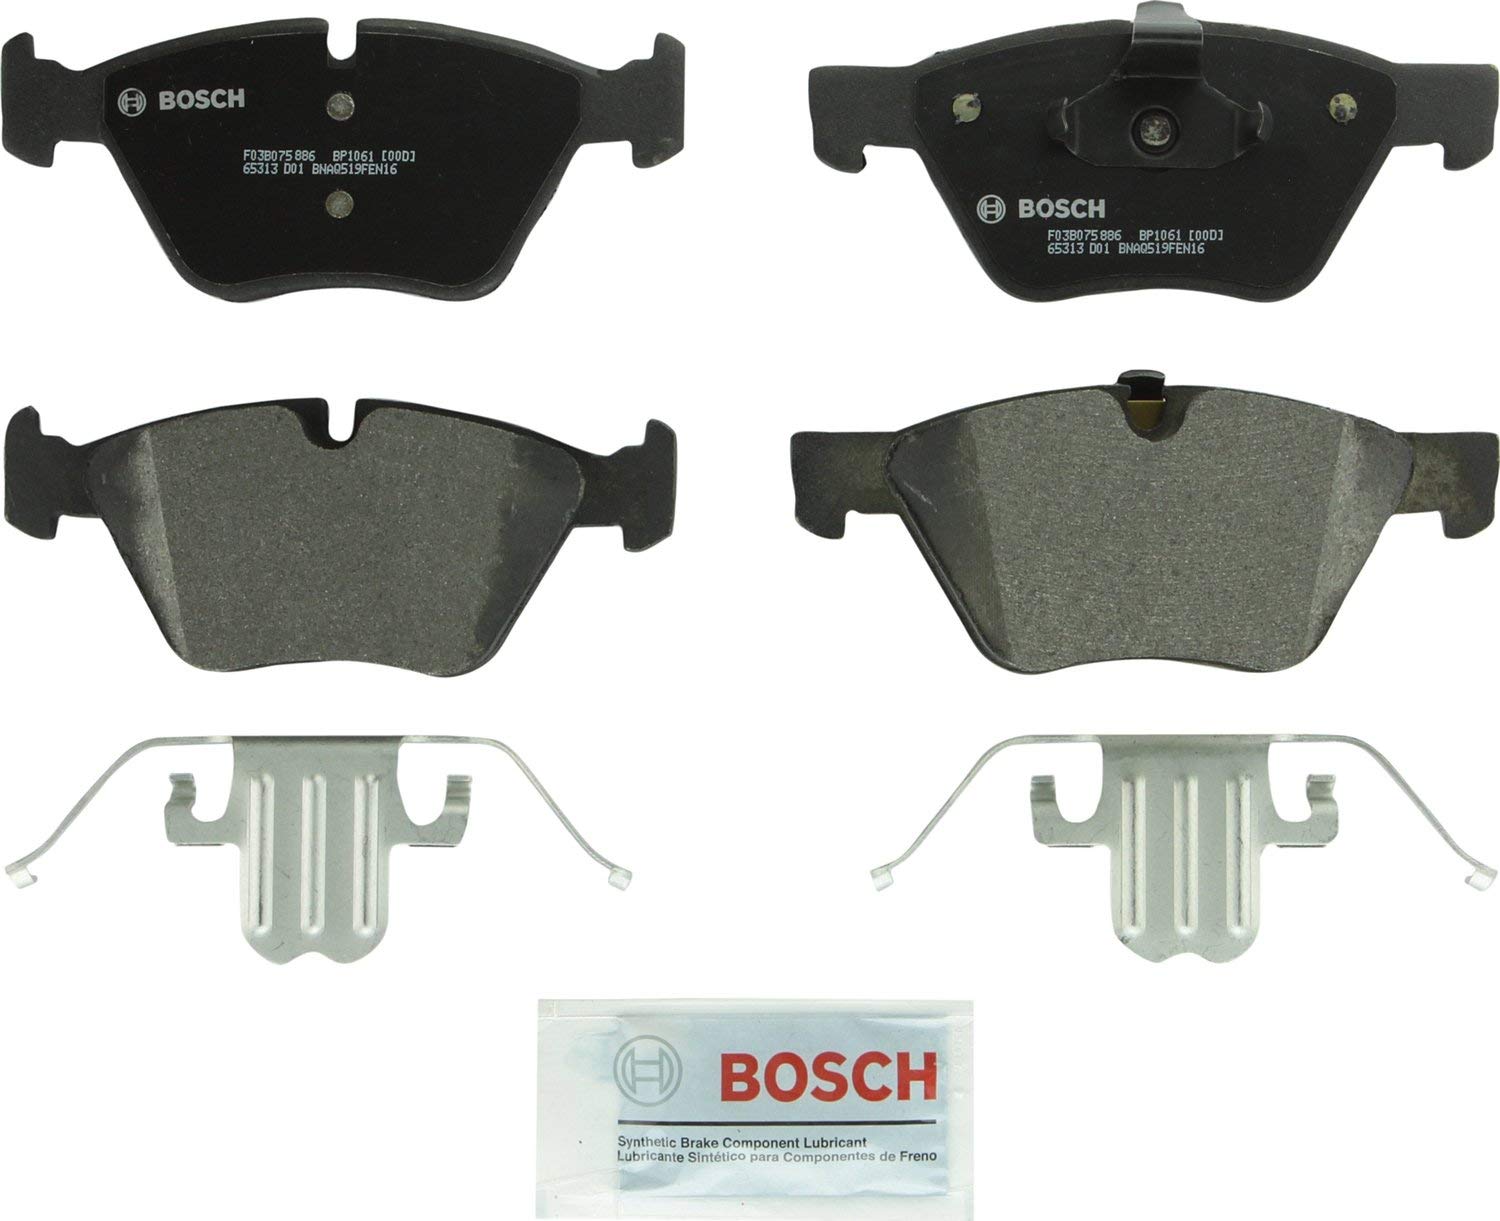 Bosch BP1061 QuietCast Premium Semi-Metallic Disc Brake Pad Set For: BMW 323i, 325i,325xi, 328i, 328xi, 330i, 330xi, 335xi, 525i, X1, Z4, Front